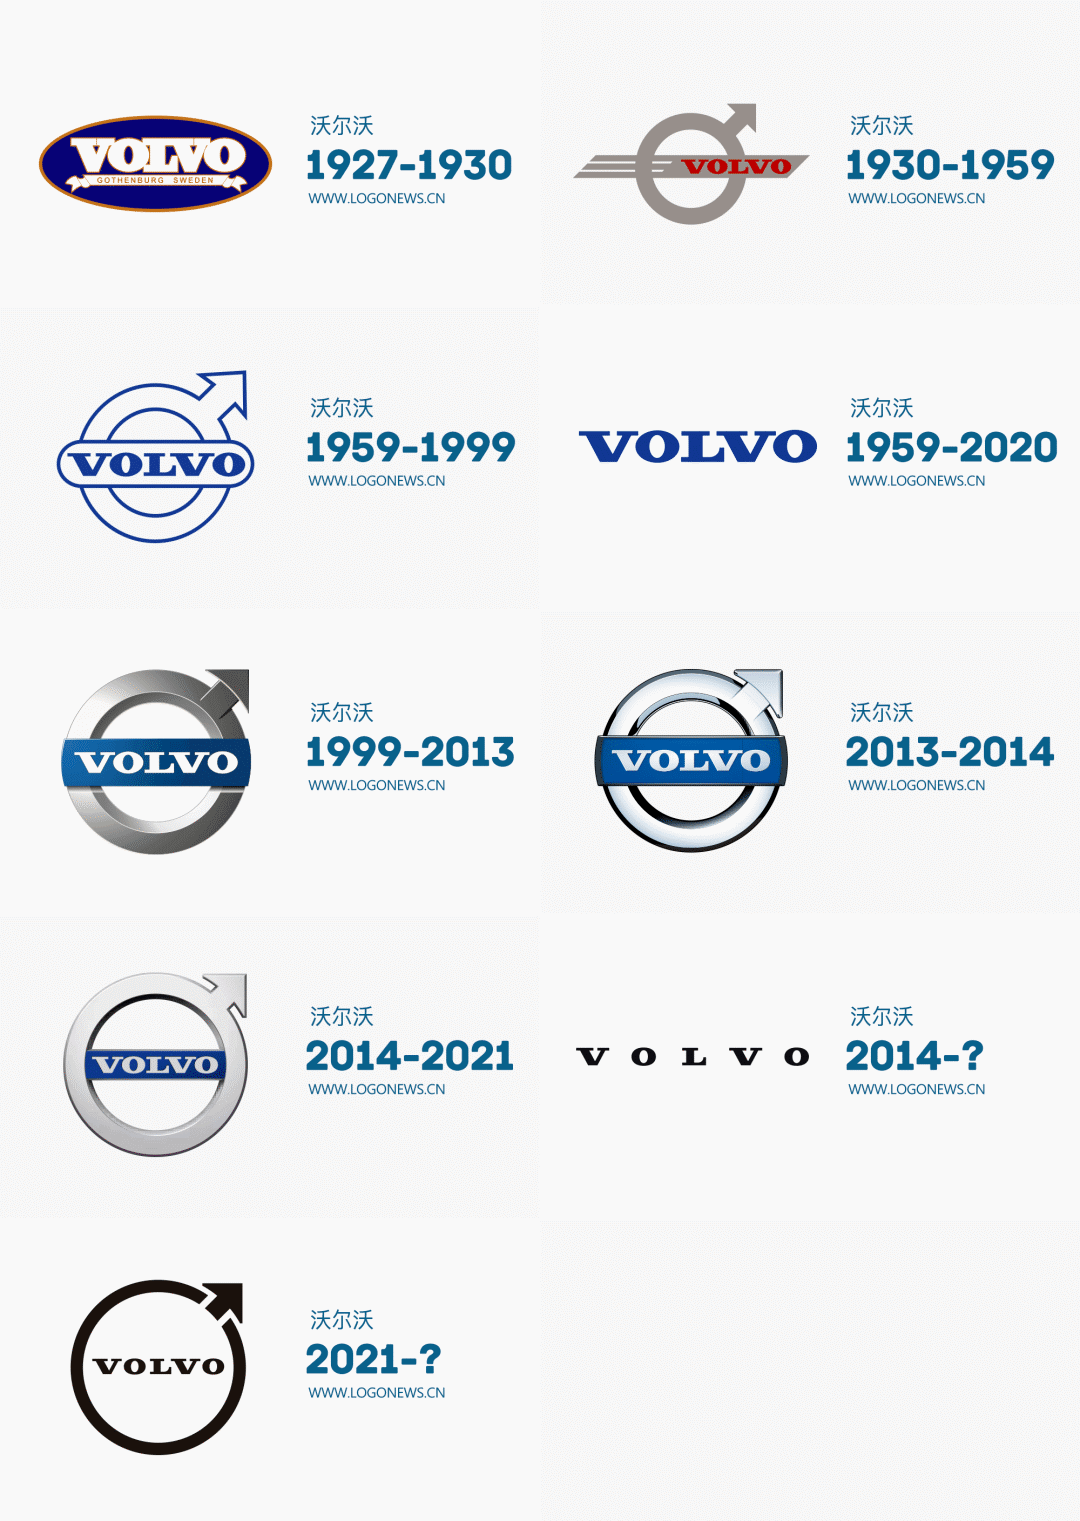 沃尔沃也加入汽车logo扁平大军了不仅扁了还瘦了呢